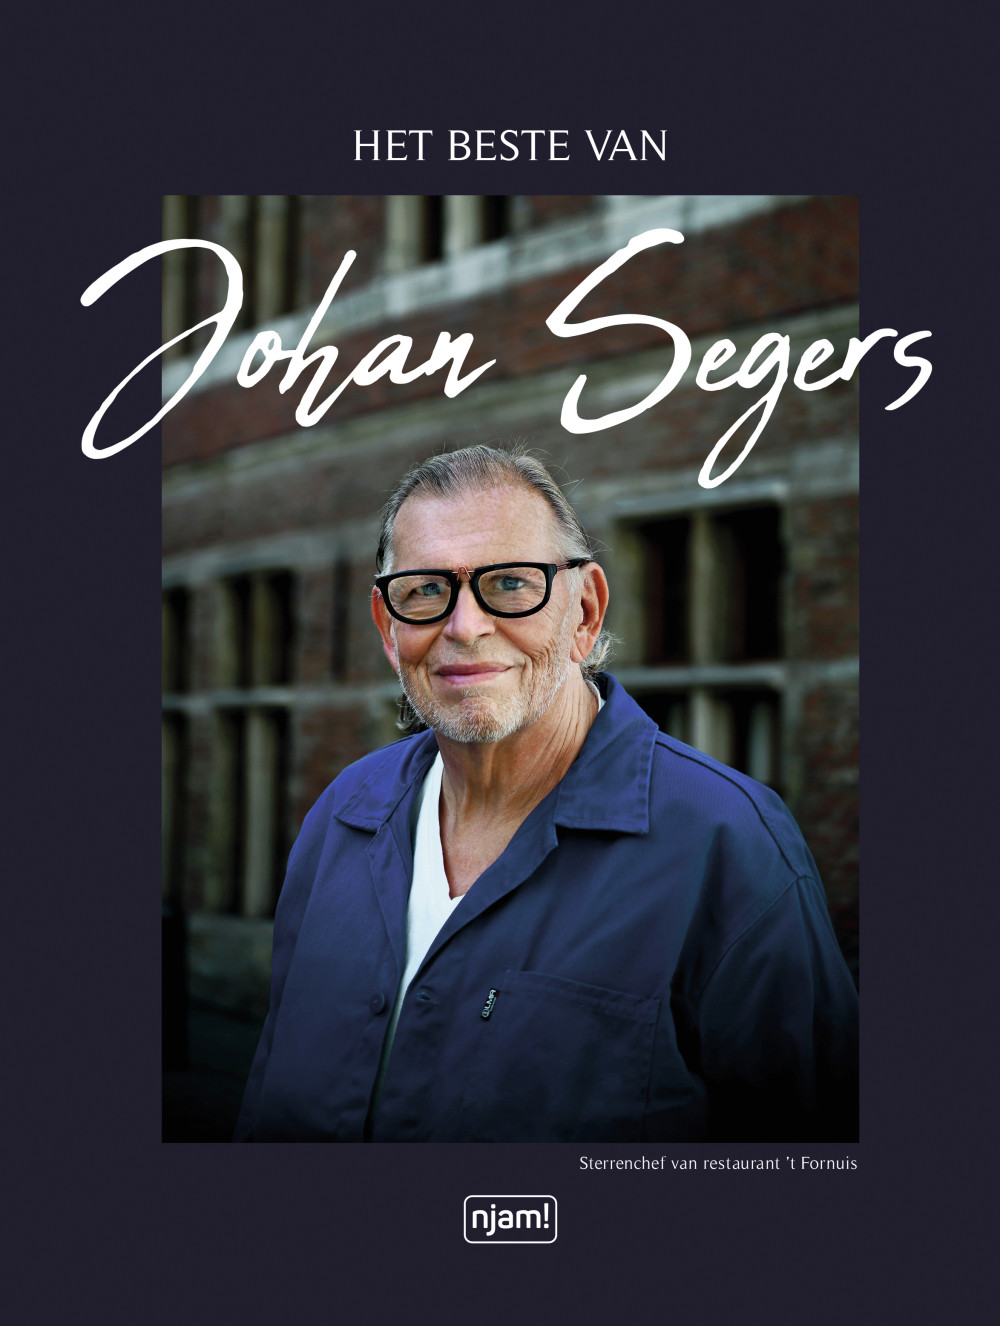 Het beste van Johan Segers